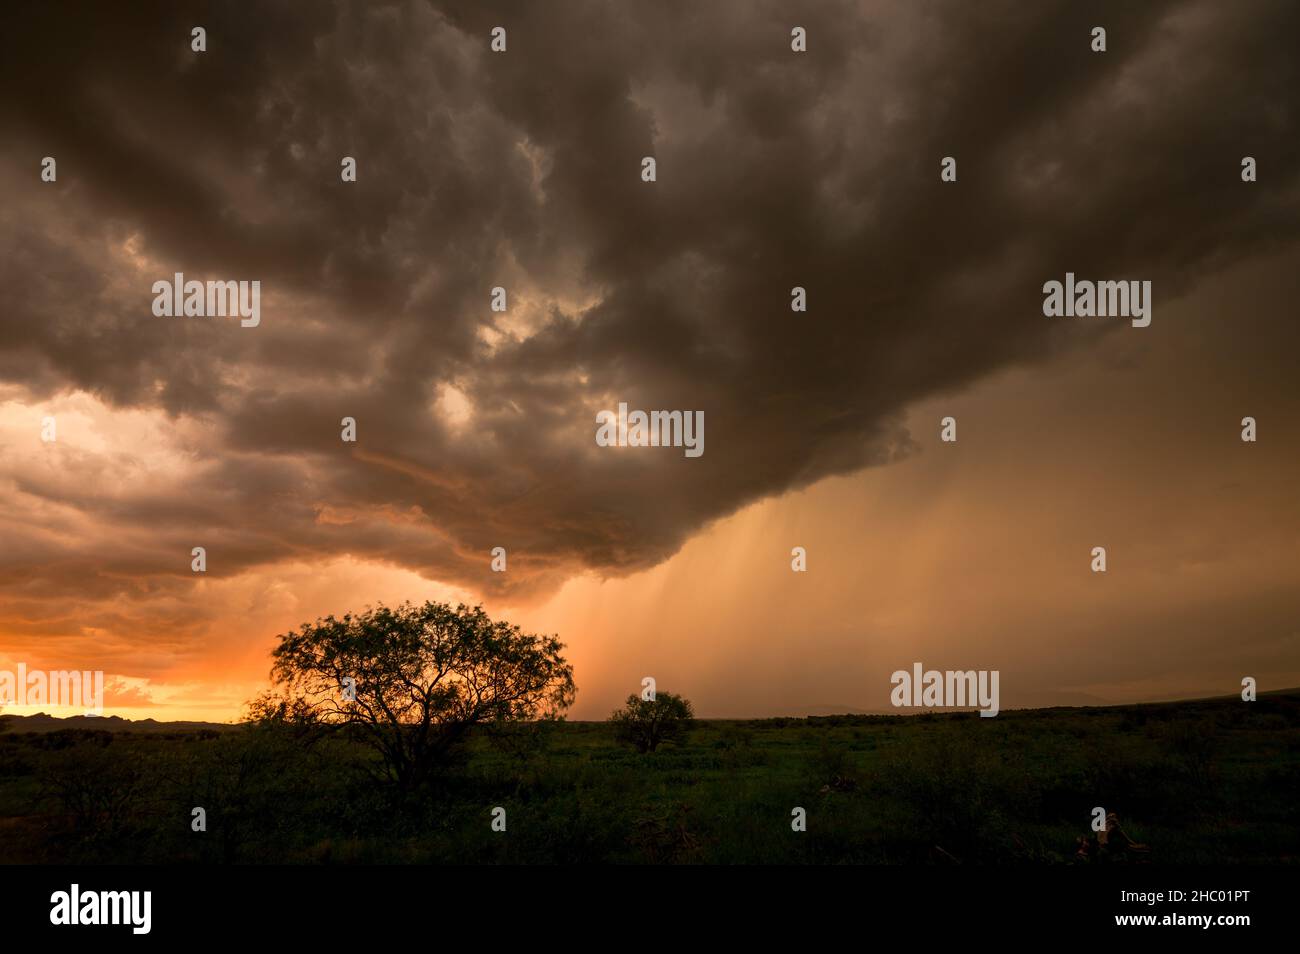 Silhouette d'arbres avec ciel orageux sombre sur un champ herbacé Banque D'Images